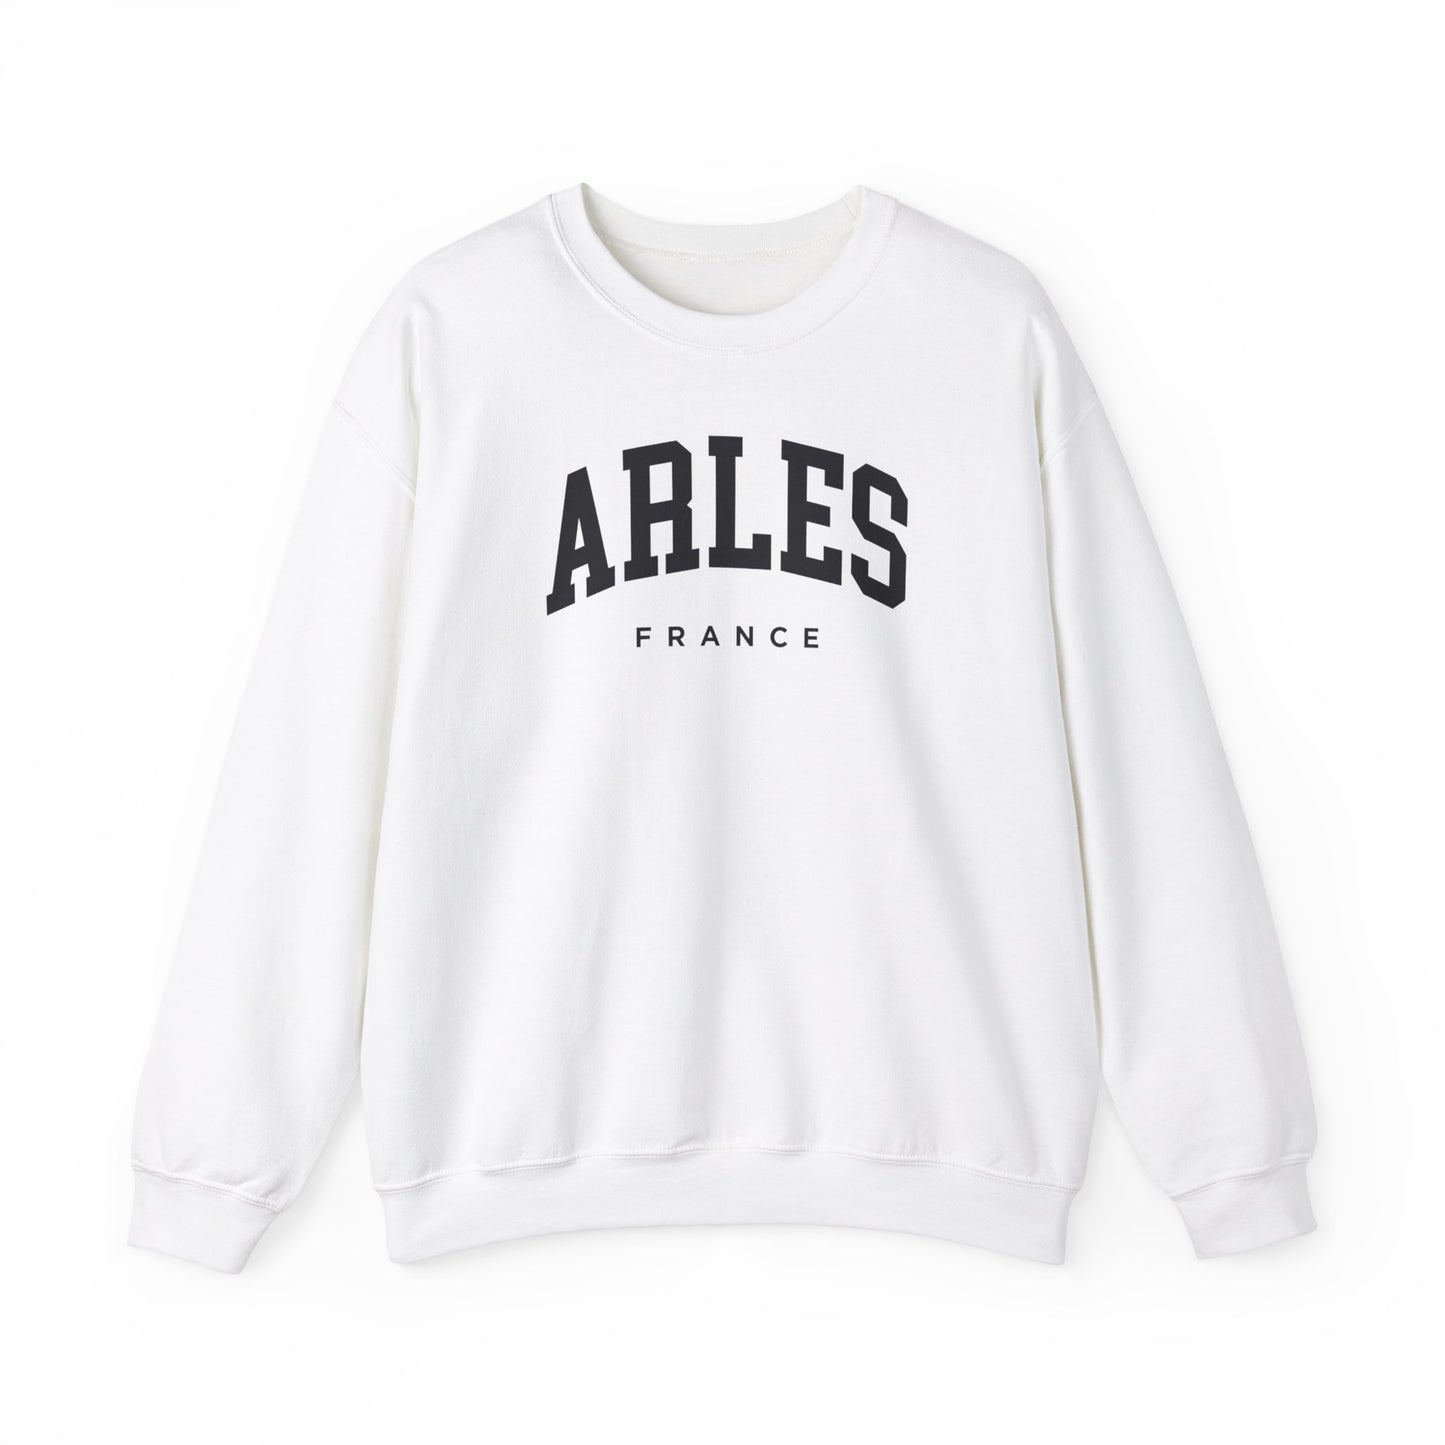 Arles France Sweatshirt